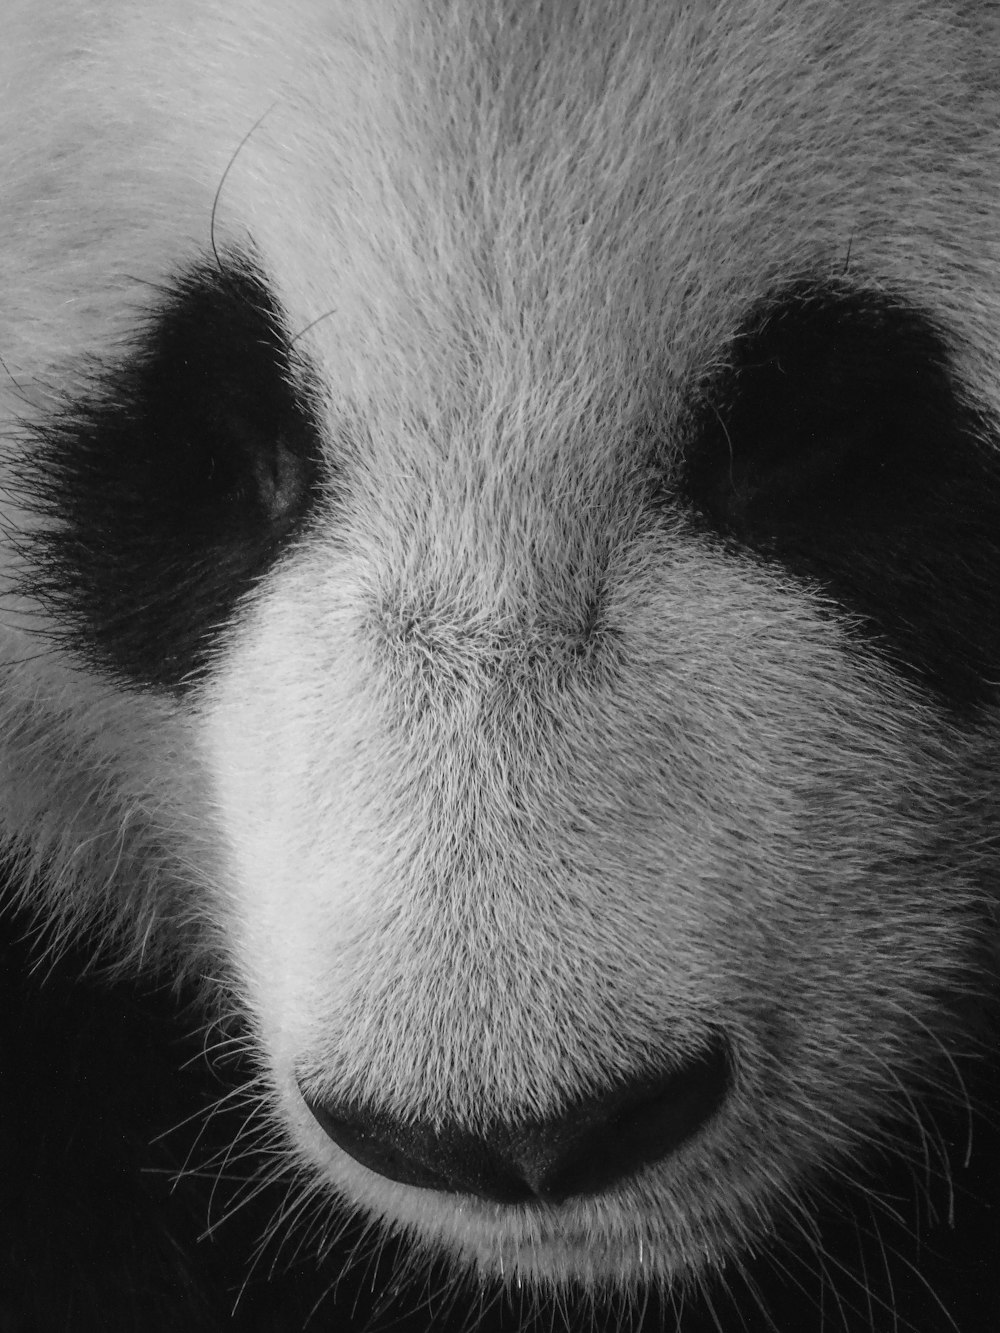 クローズアップ写真の白と黒のパンダ